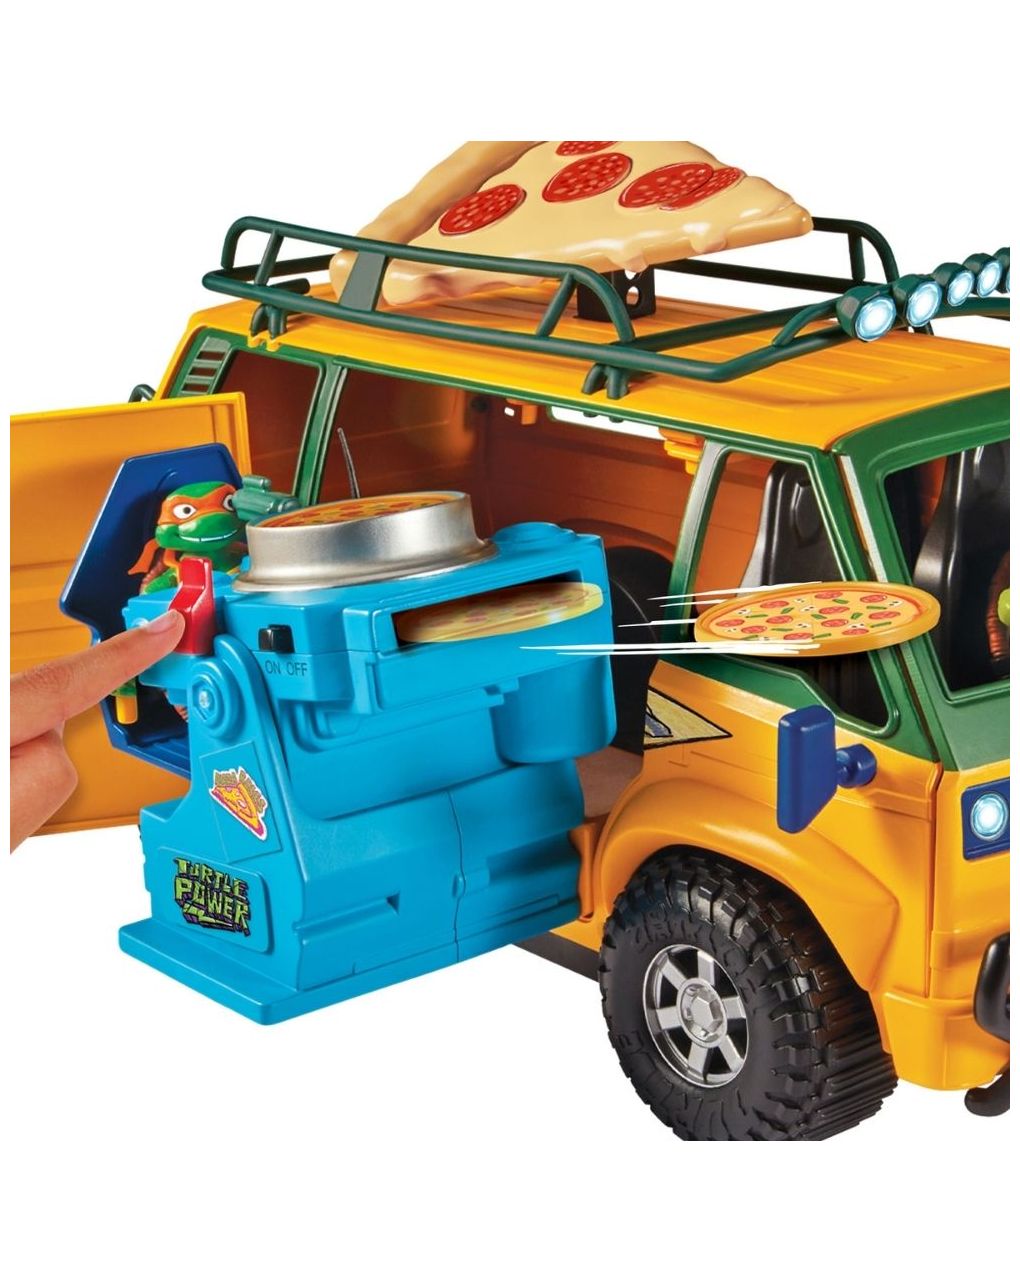 Tmnt movie χελωνονιντζάκια όχημα pizza van tu804000 - TURTLES NINJA